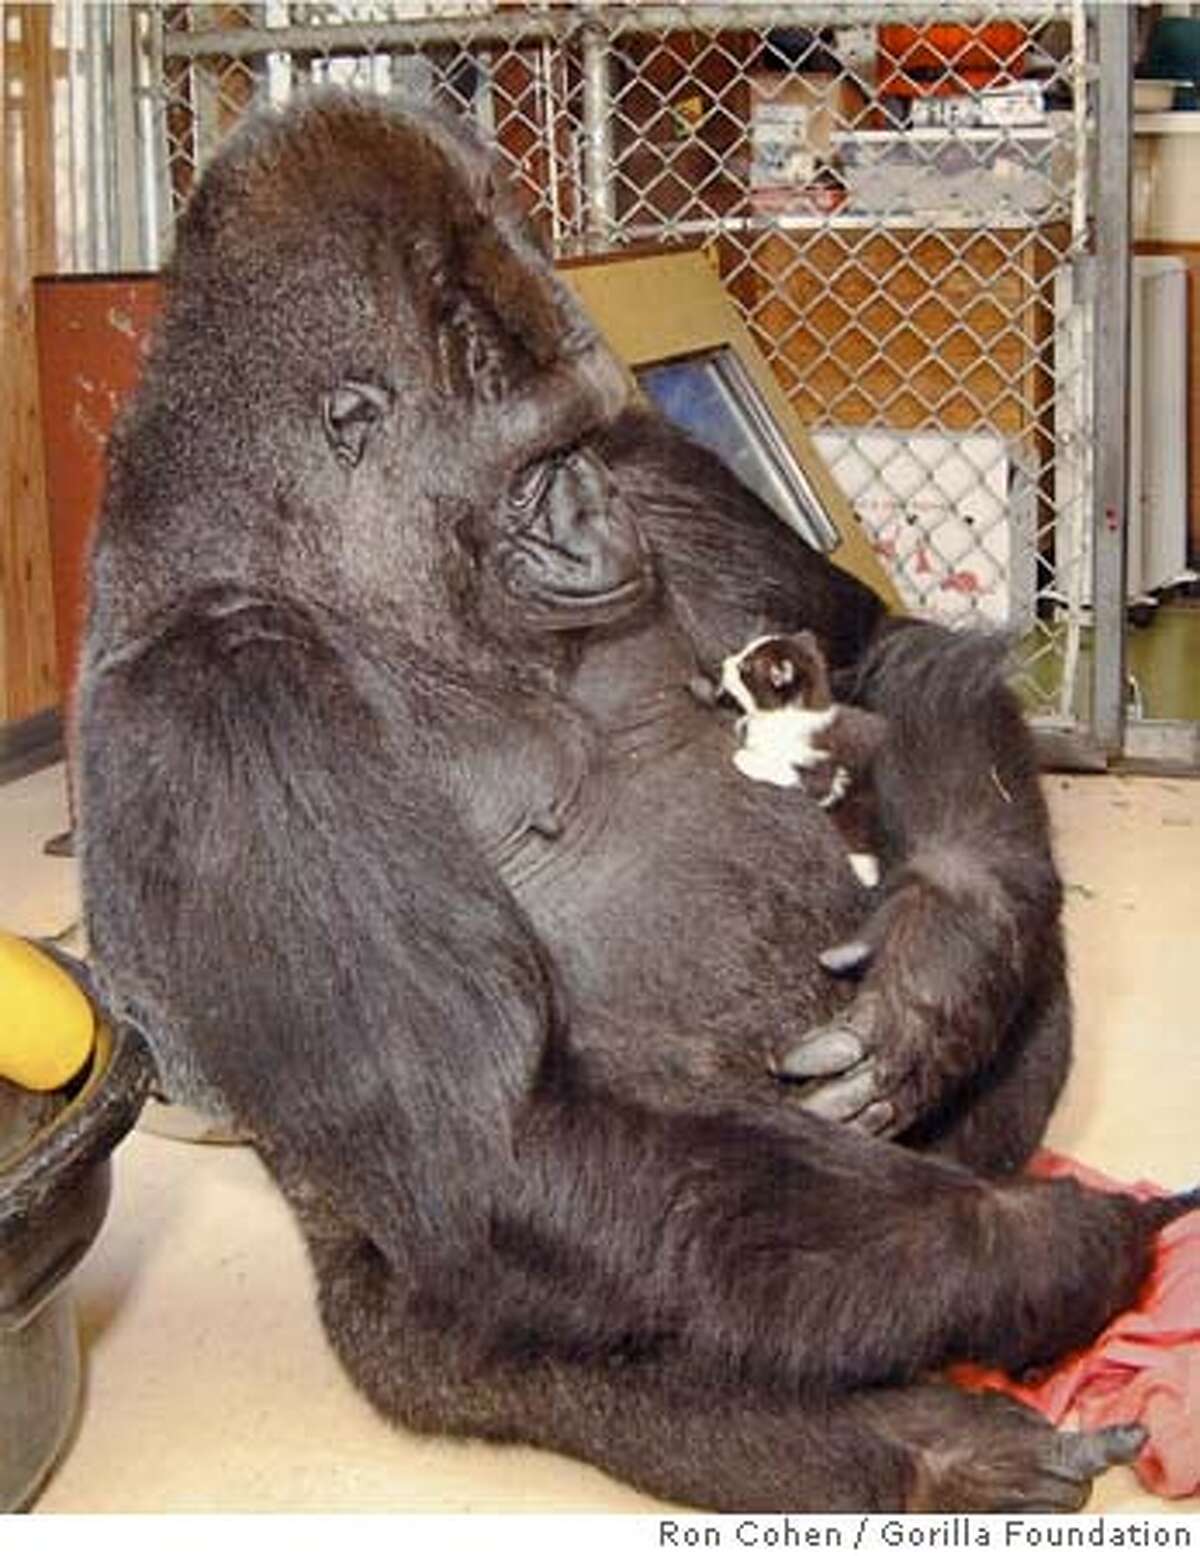 KOKO-C-02AUG00-MN-HO--Koko the gorilla and her kitten. PHOTO CREDIT: RON COHEN/GORILLA FOUNDATION